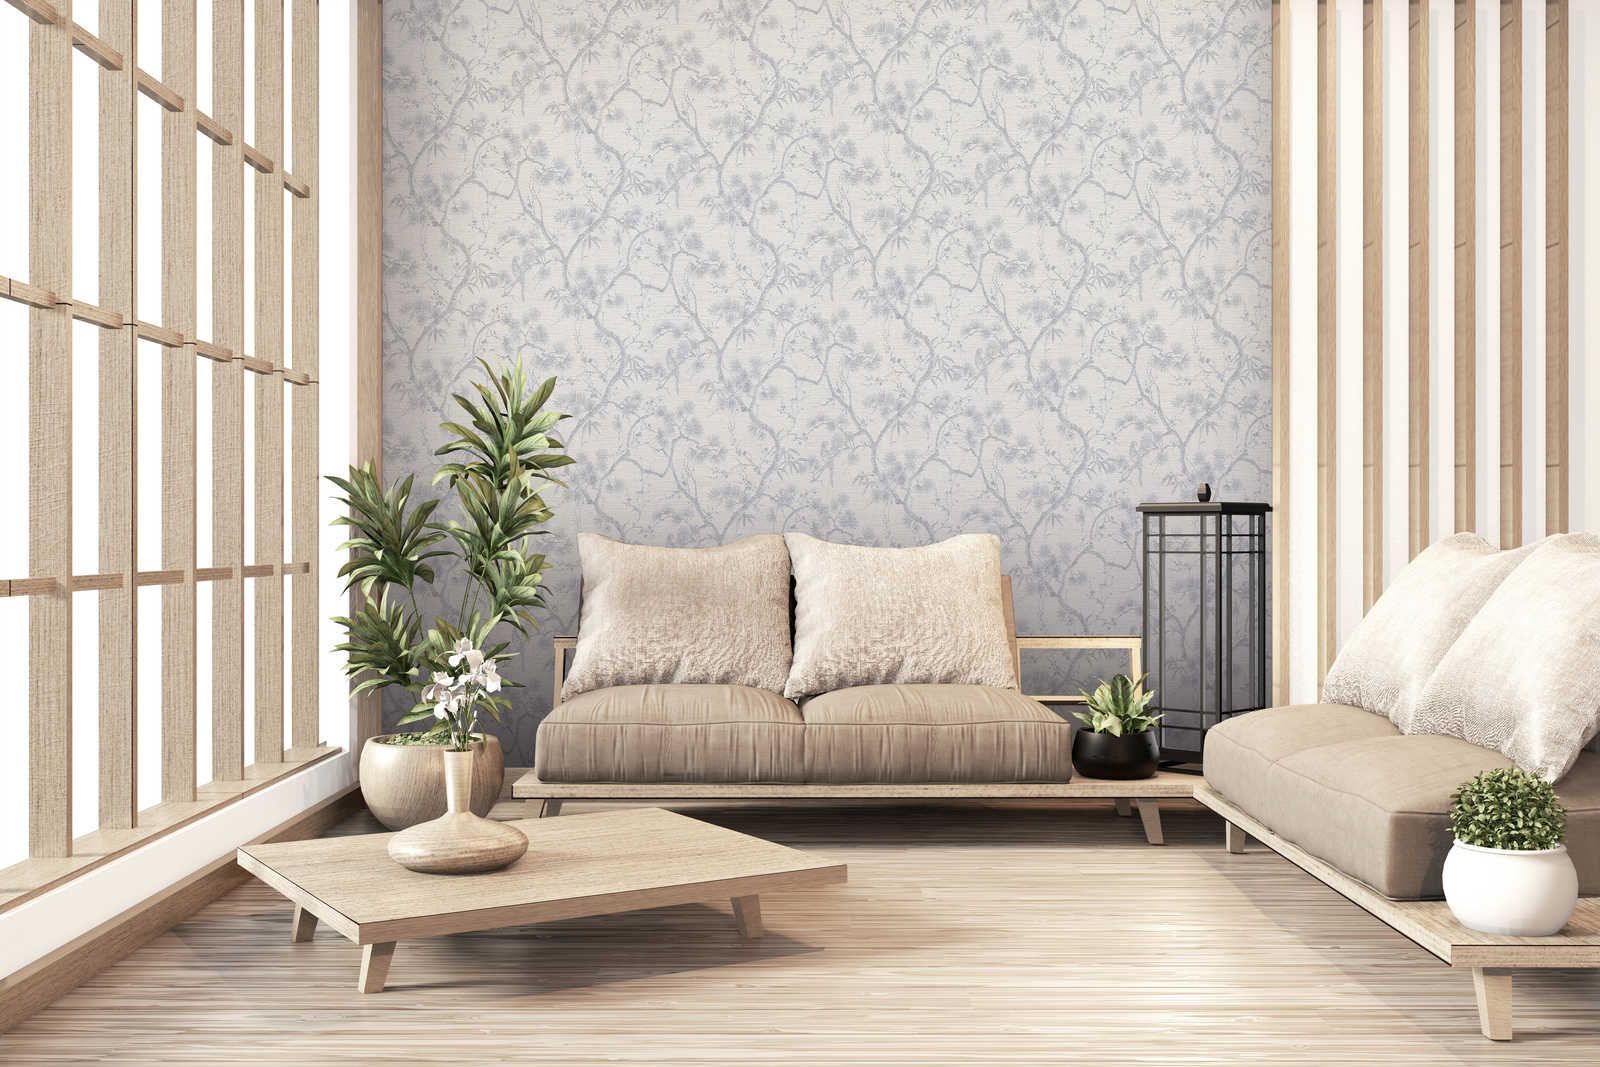             Tapete mit natürlichem Design im Asia Style – Grau, Metallic, Weiß
        